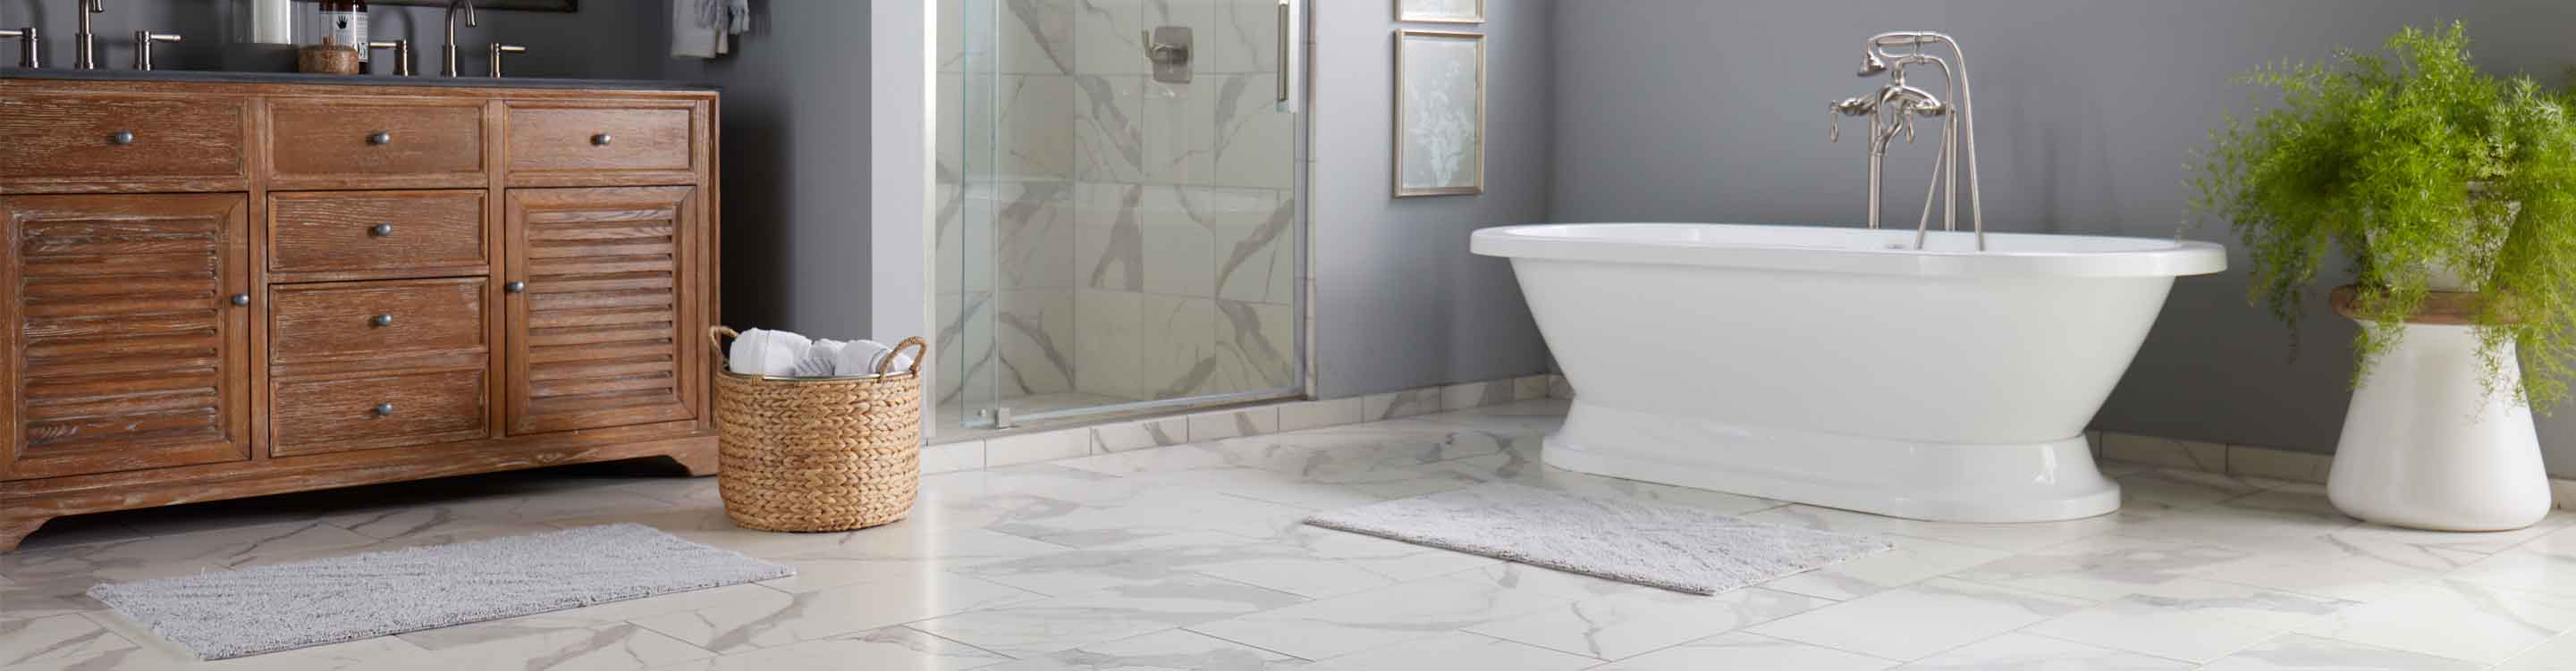 Marble tile floor in bathroom with bath tub. 